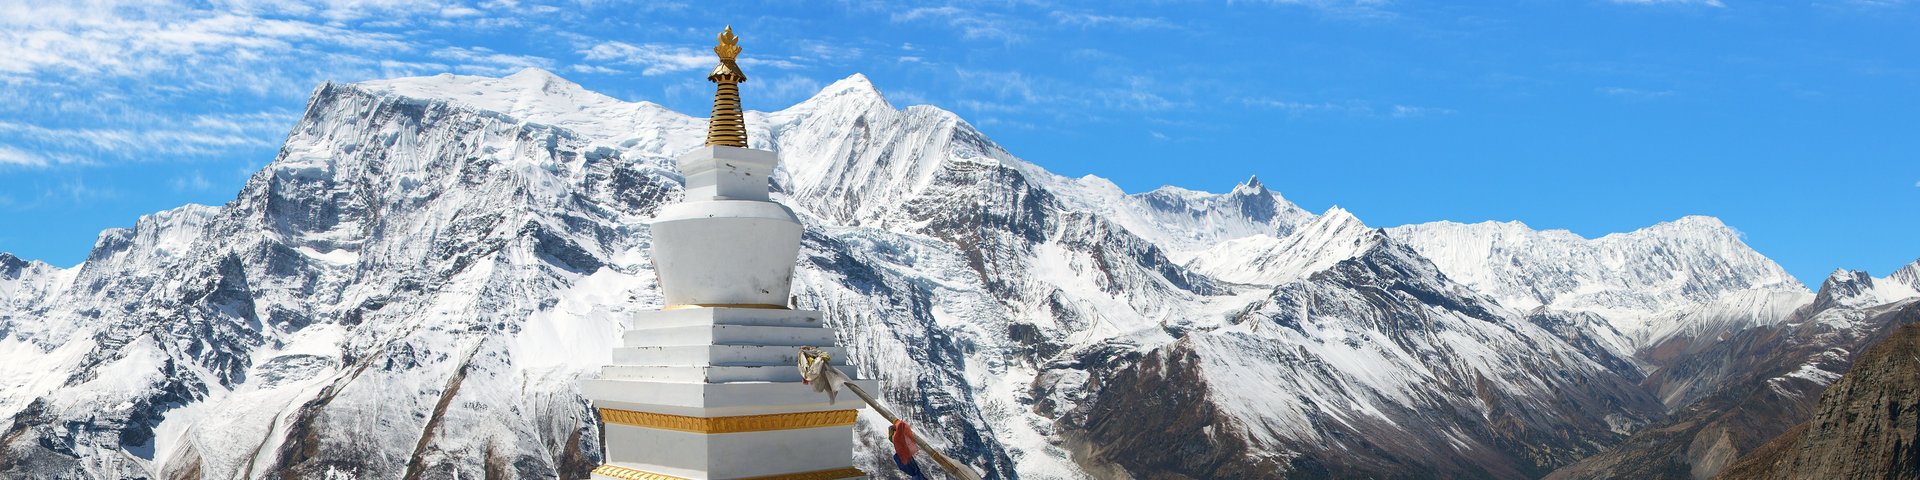 Panormablick aufs Annapurna-Massiv in Nepal